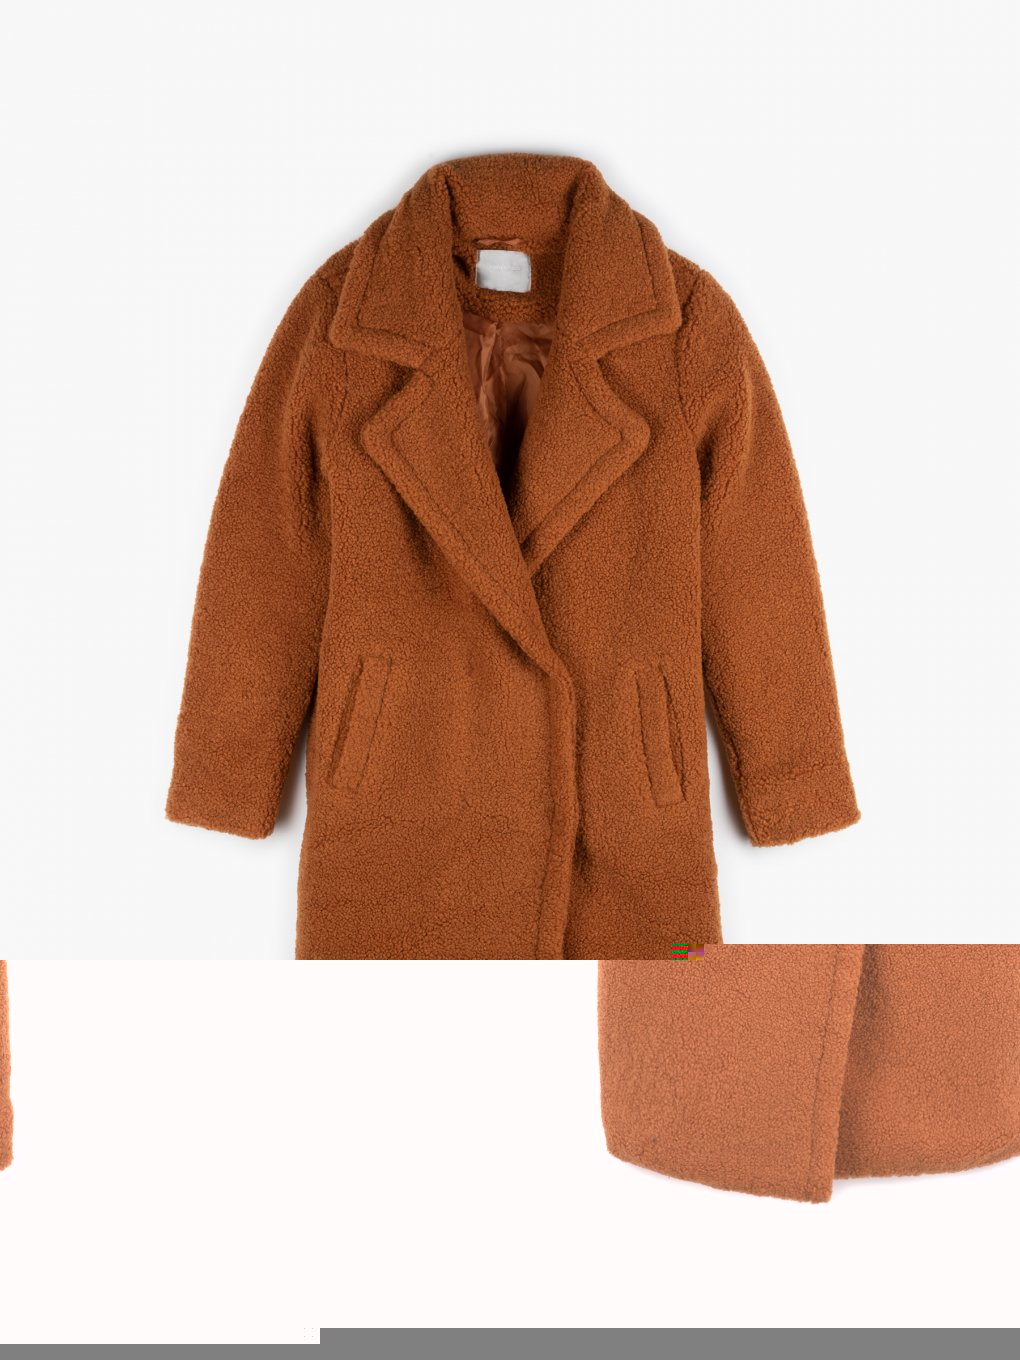 Longline teddy coat